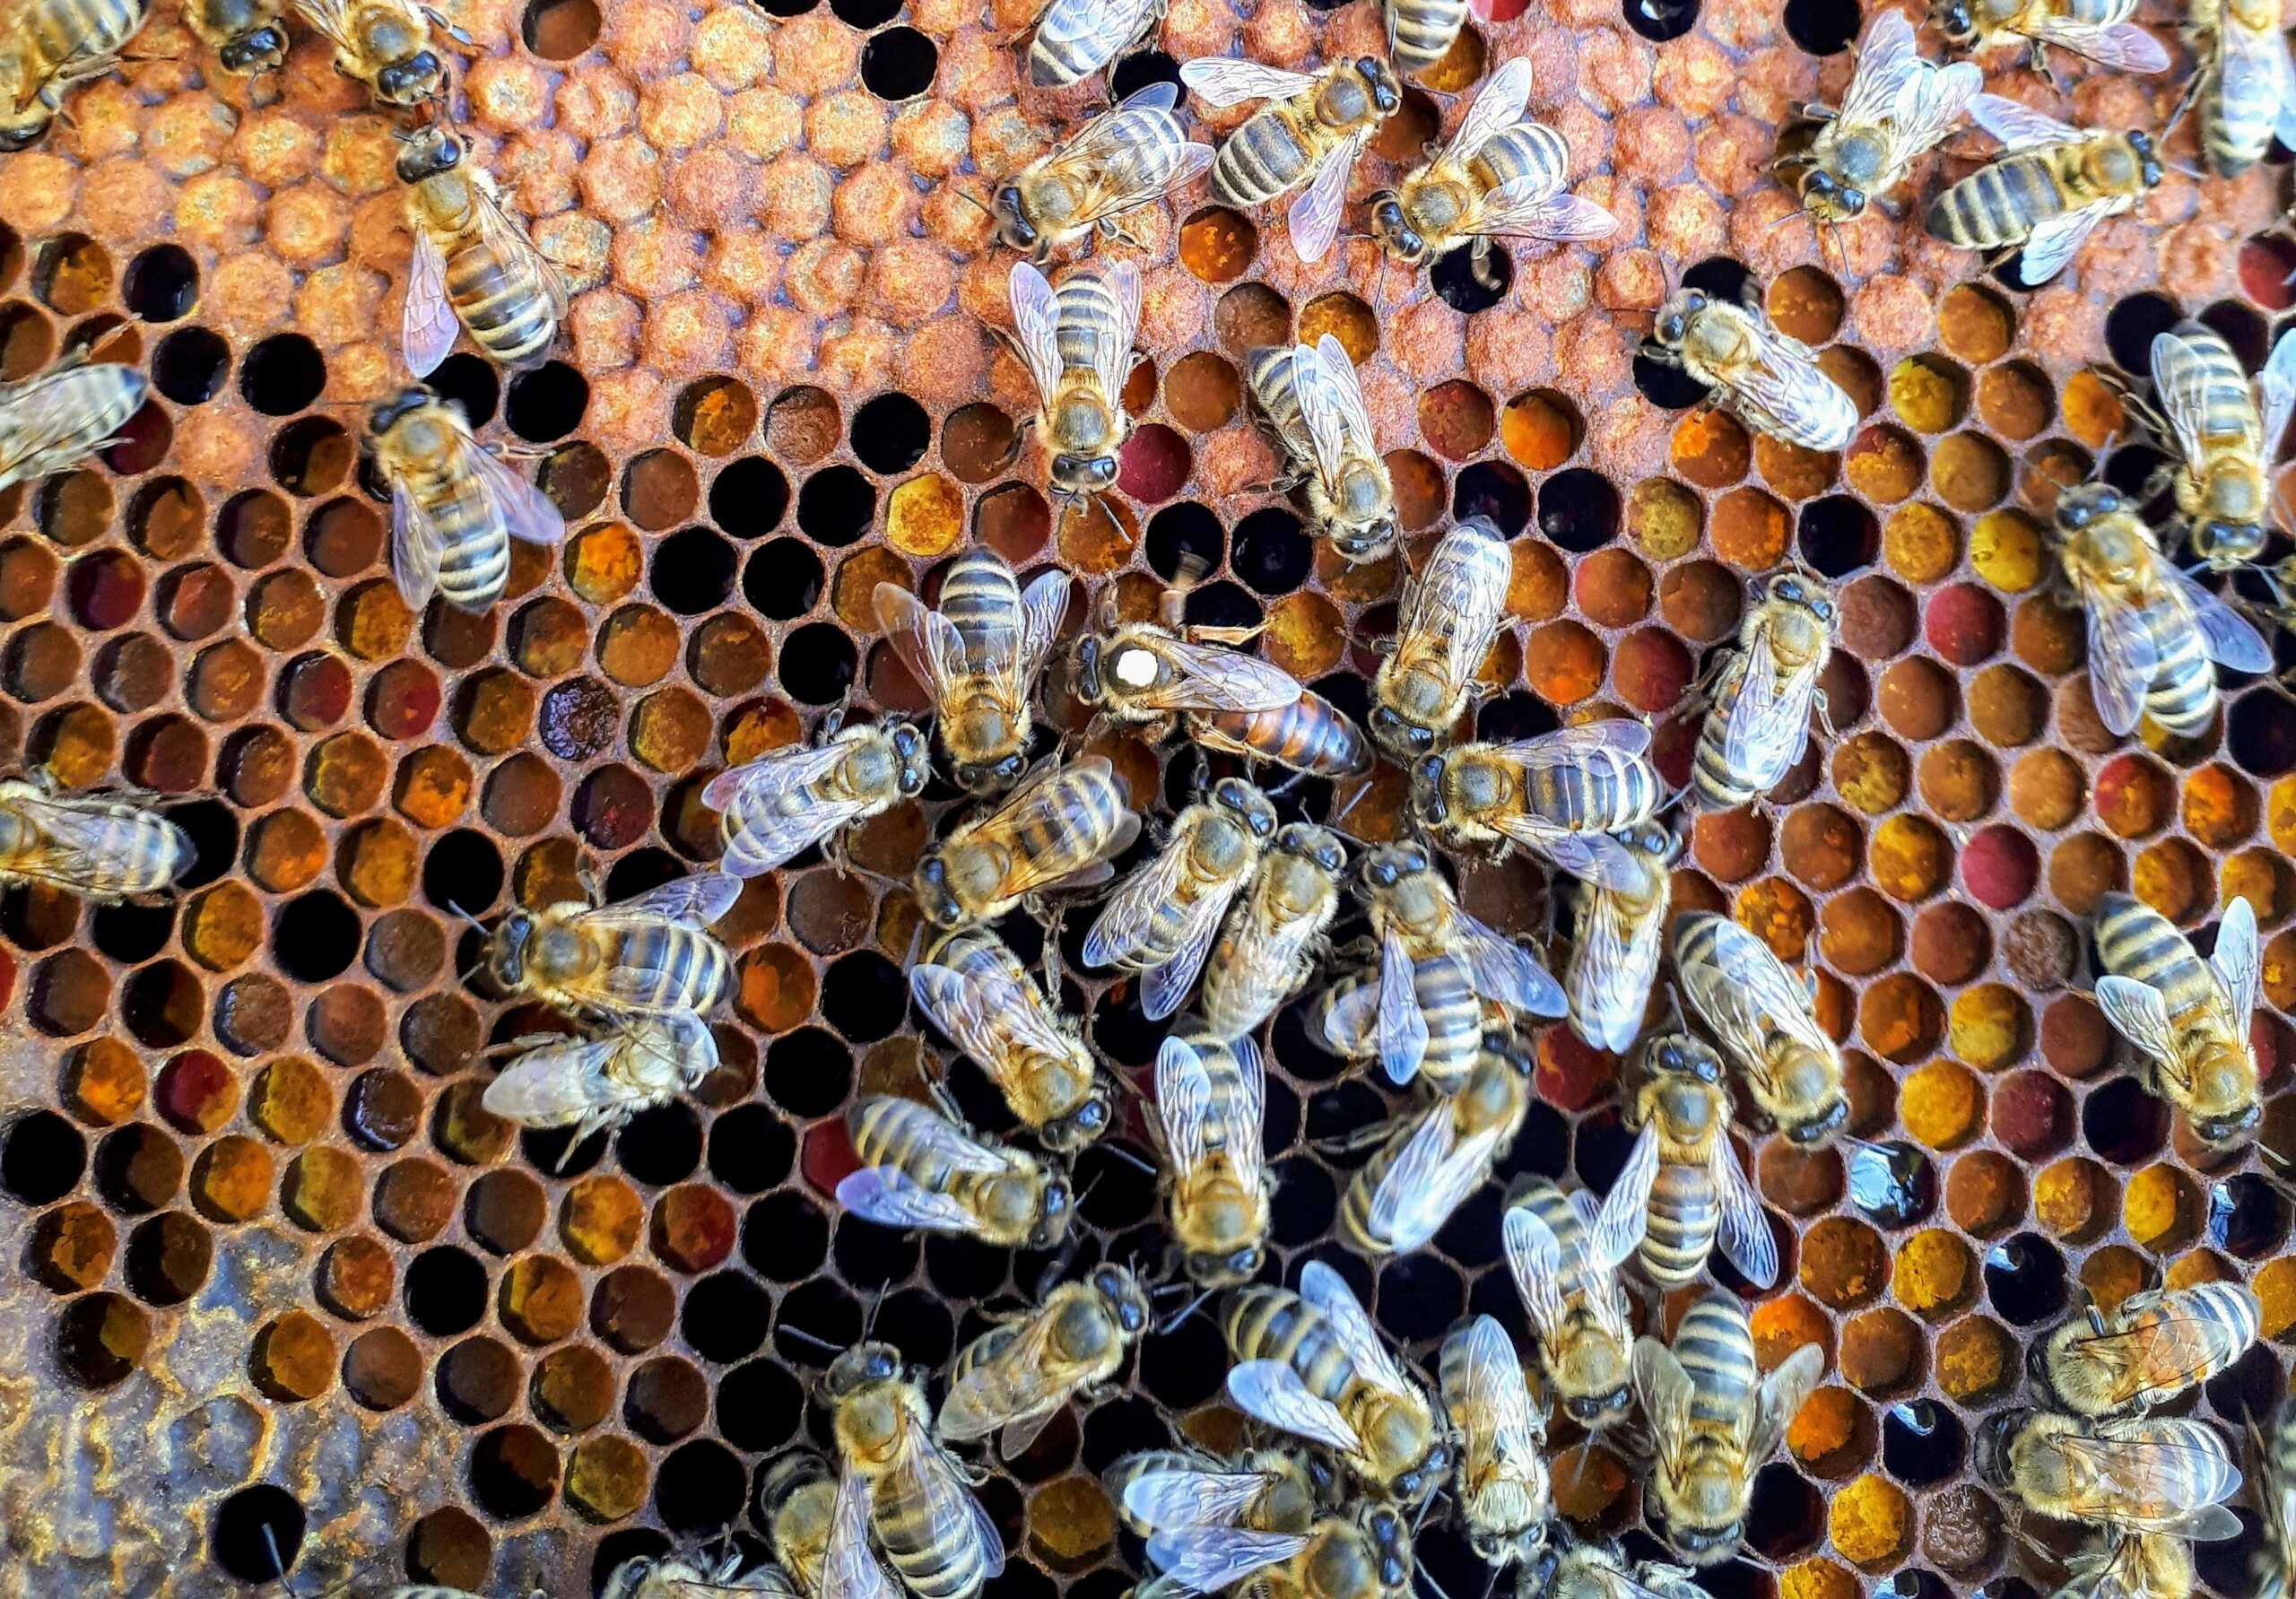 Die Biene in der Mitte mit der weißen Markierung auf dem Rücken ist die Bienenkönigin (Foto: Boba Jaglicic/Unsplash).